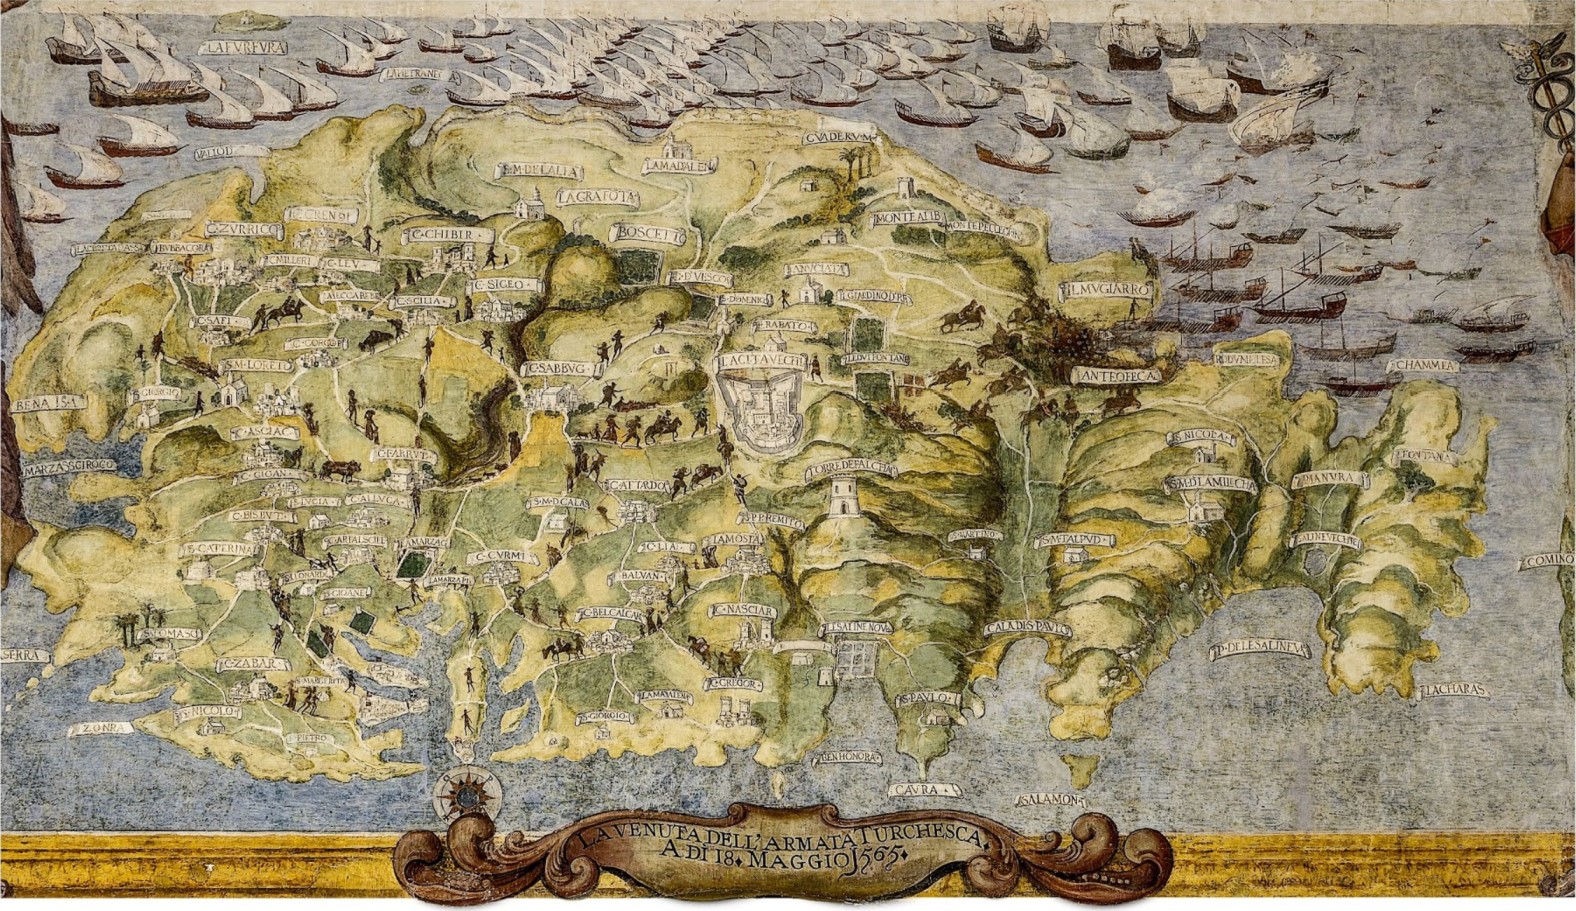 Mappa ta’ Malta turi l-wasla ta’ l-armata Torka fit-18 ta’ Mejju 1565